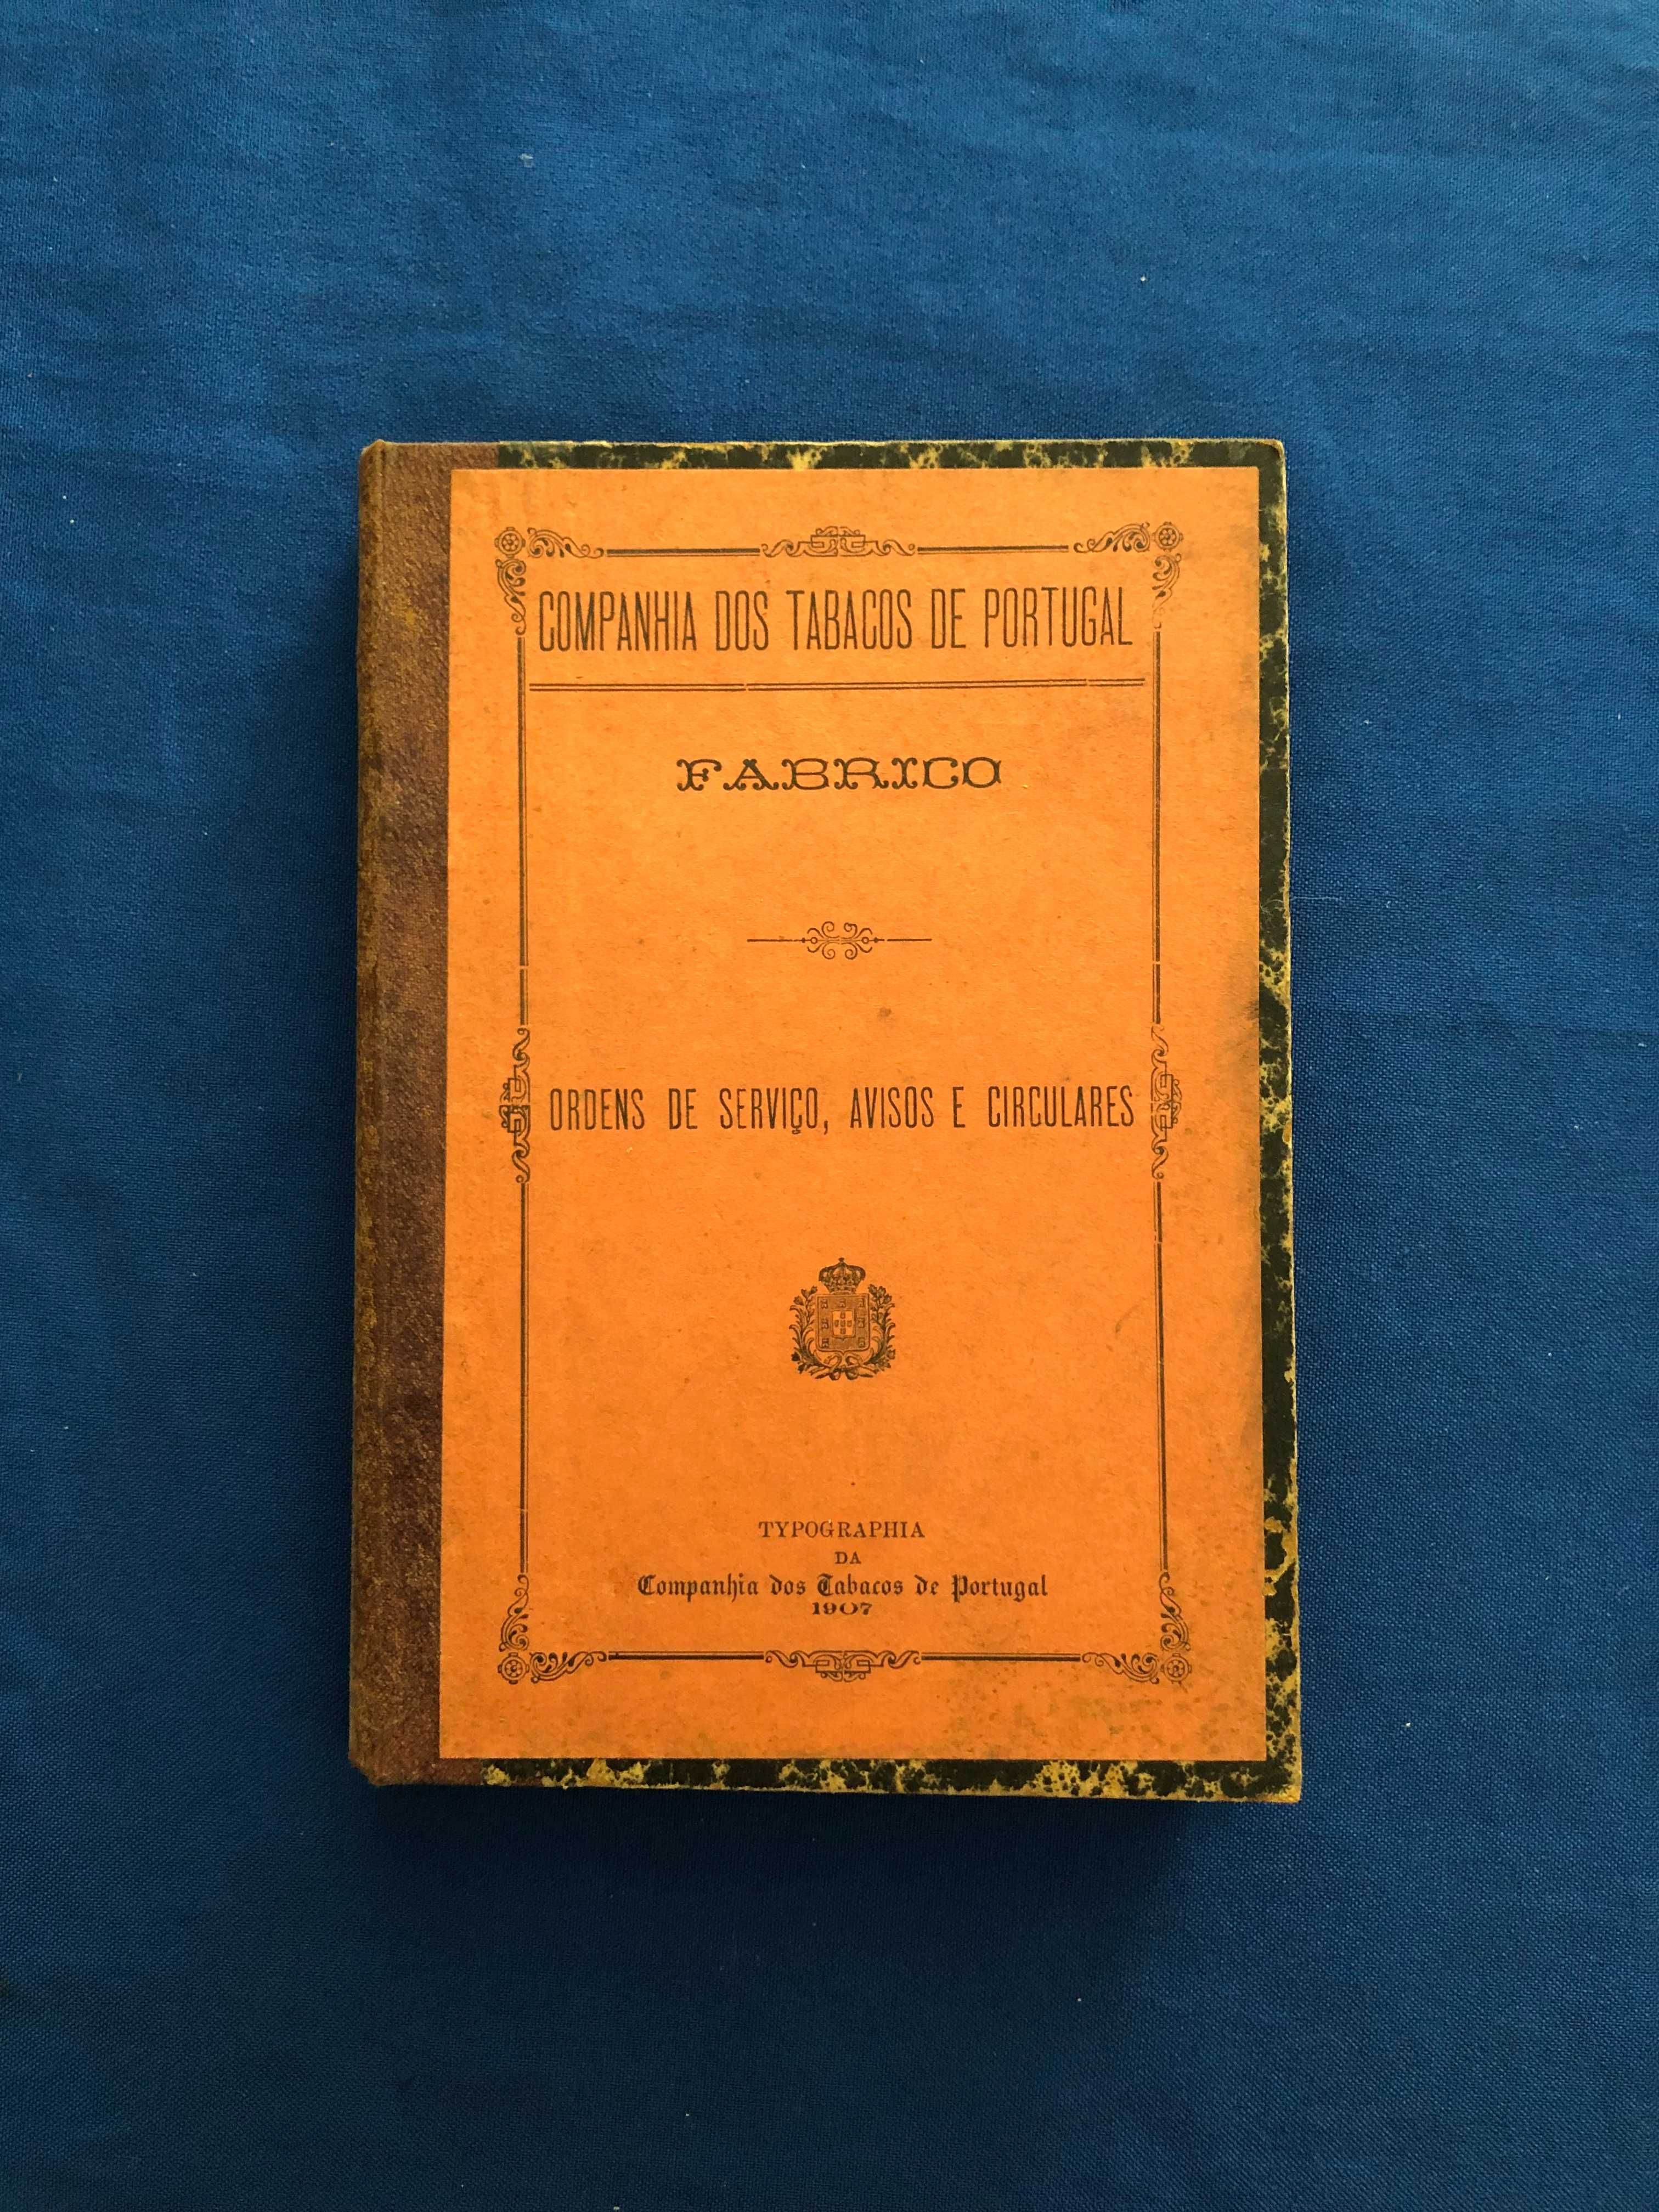 Tabaco - COMPANHIA DOS TABACOS DE PORTUGAL - FABRICO - 1907